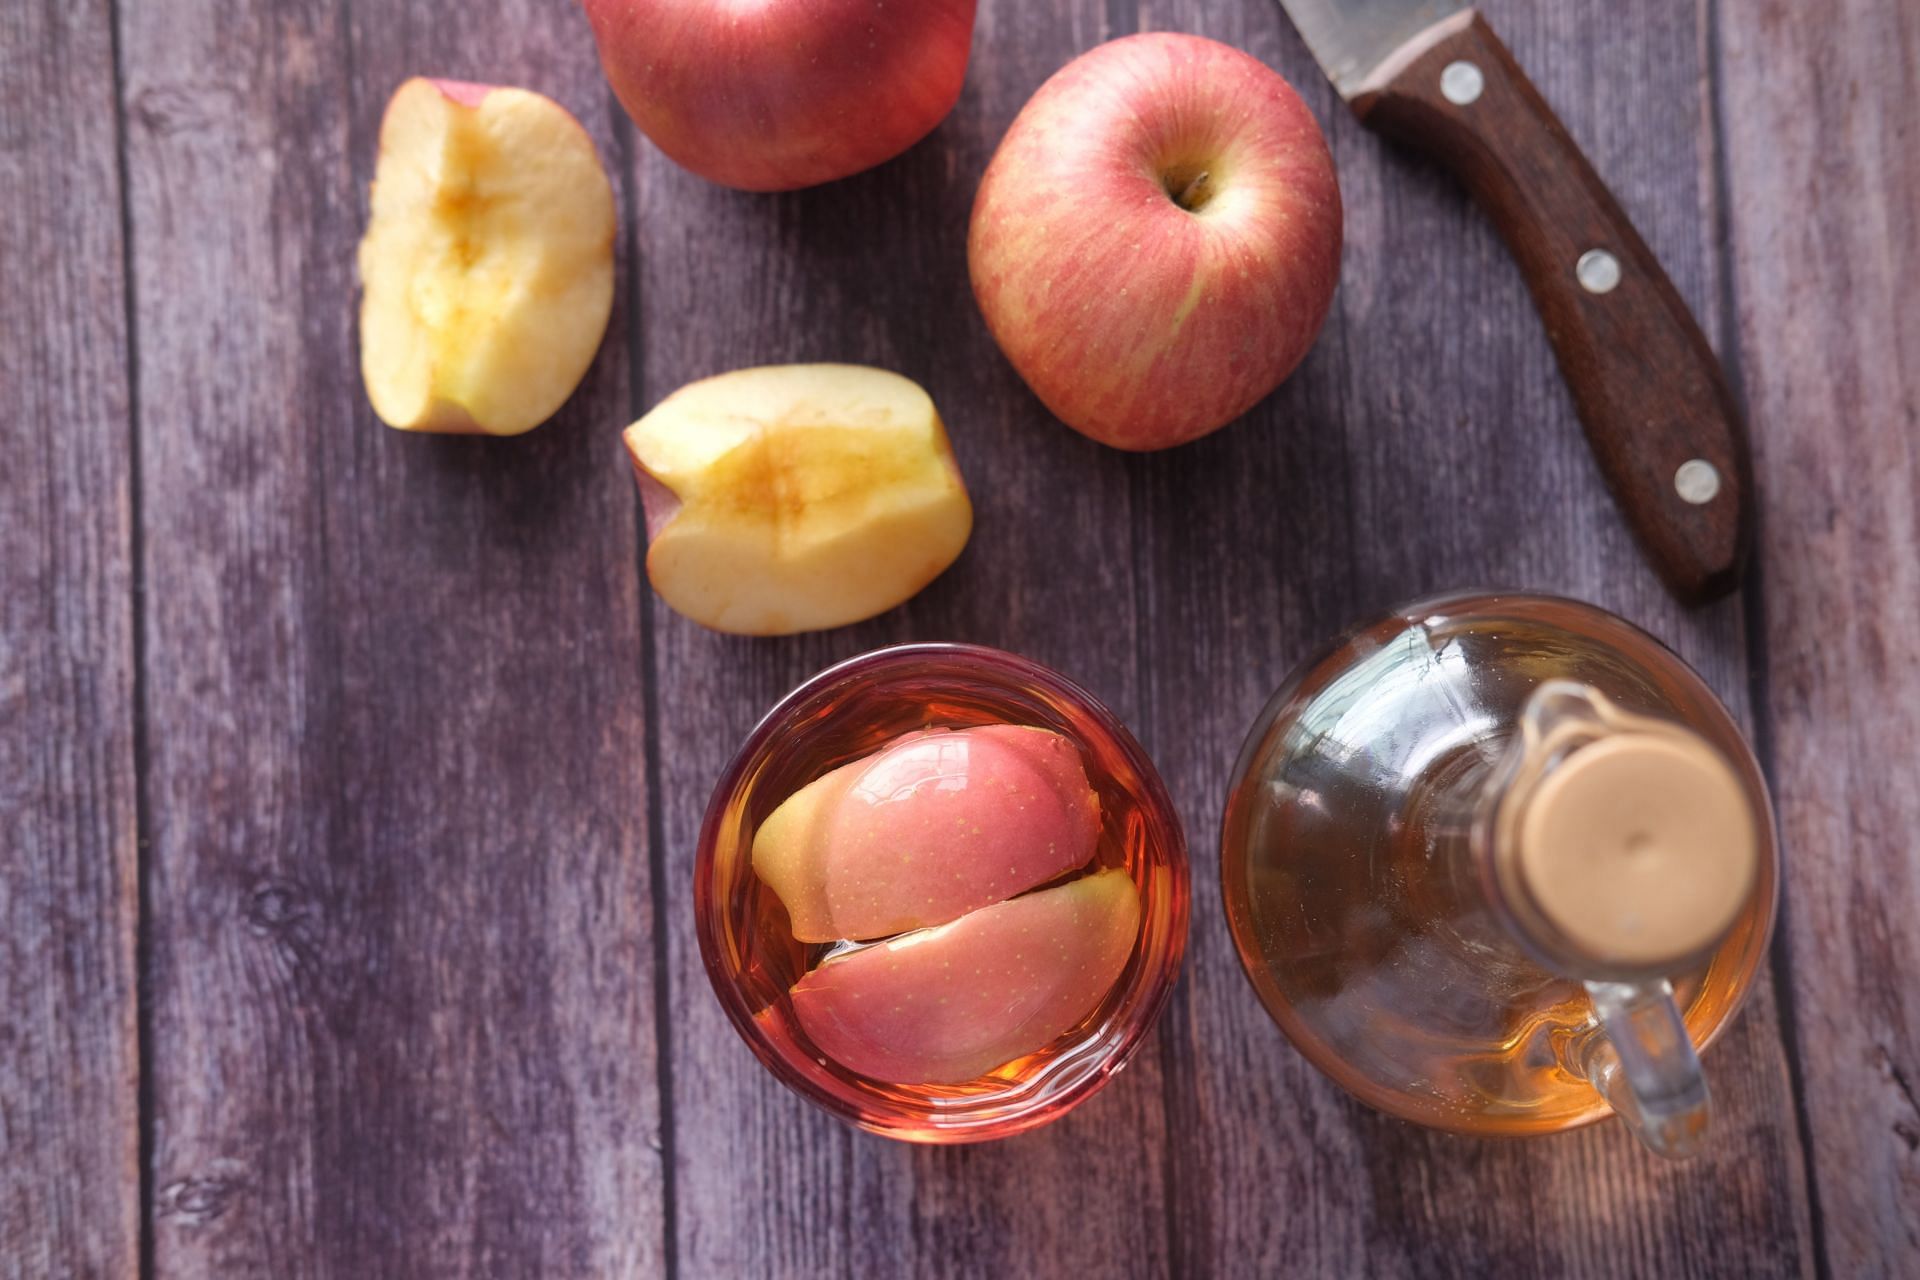 Health benefits of apple cider vinegar (Image via Unsplash/Towfiqu Barbhuiya)